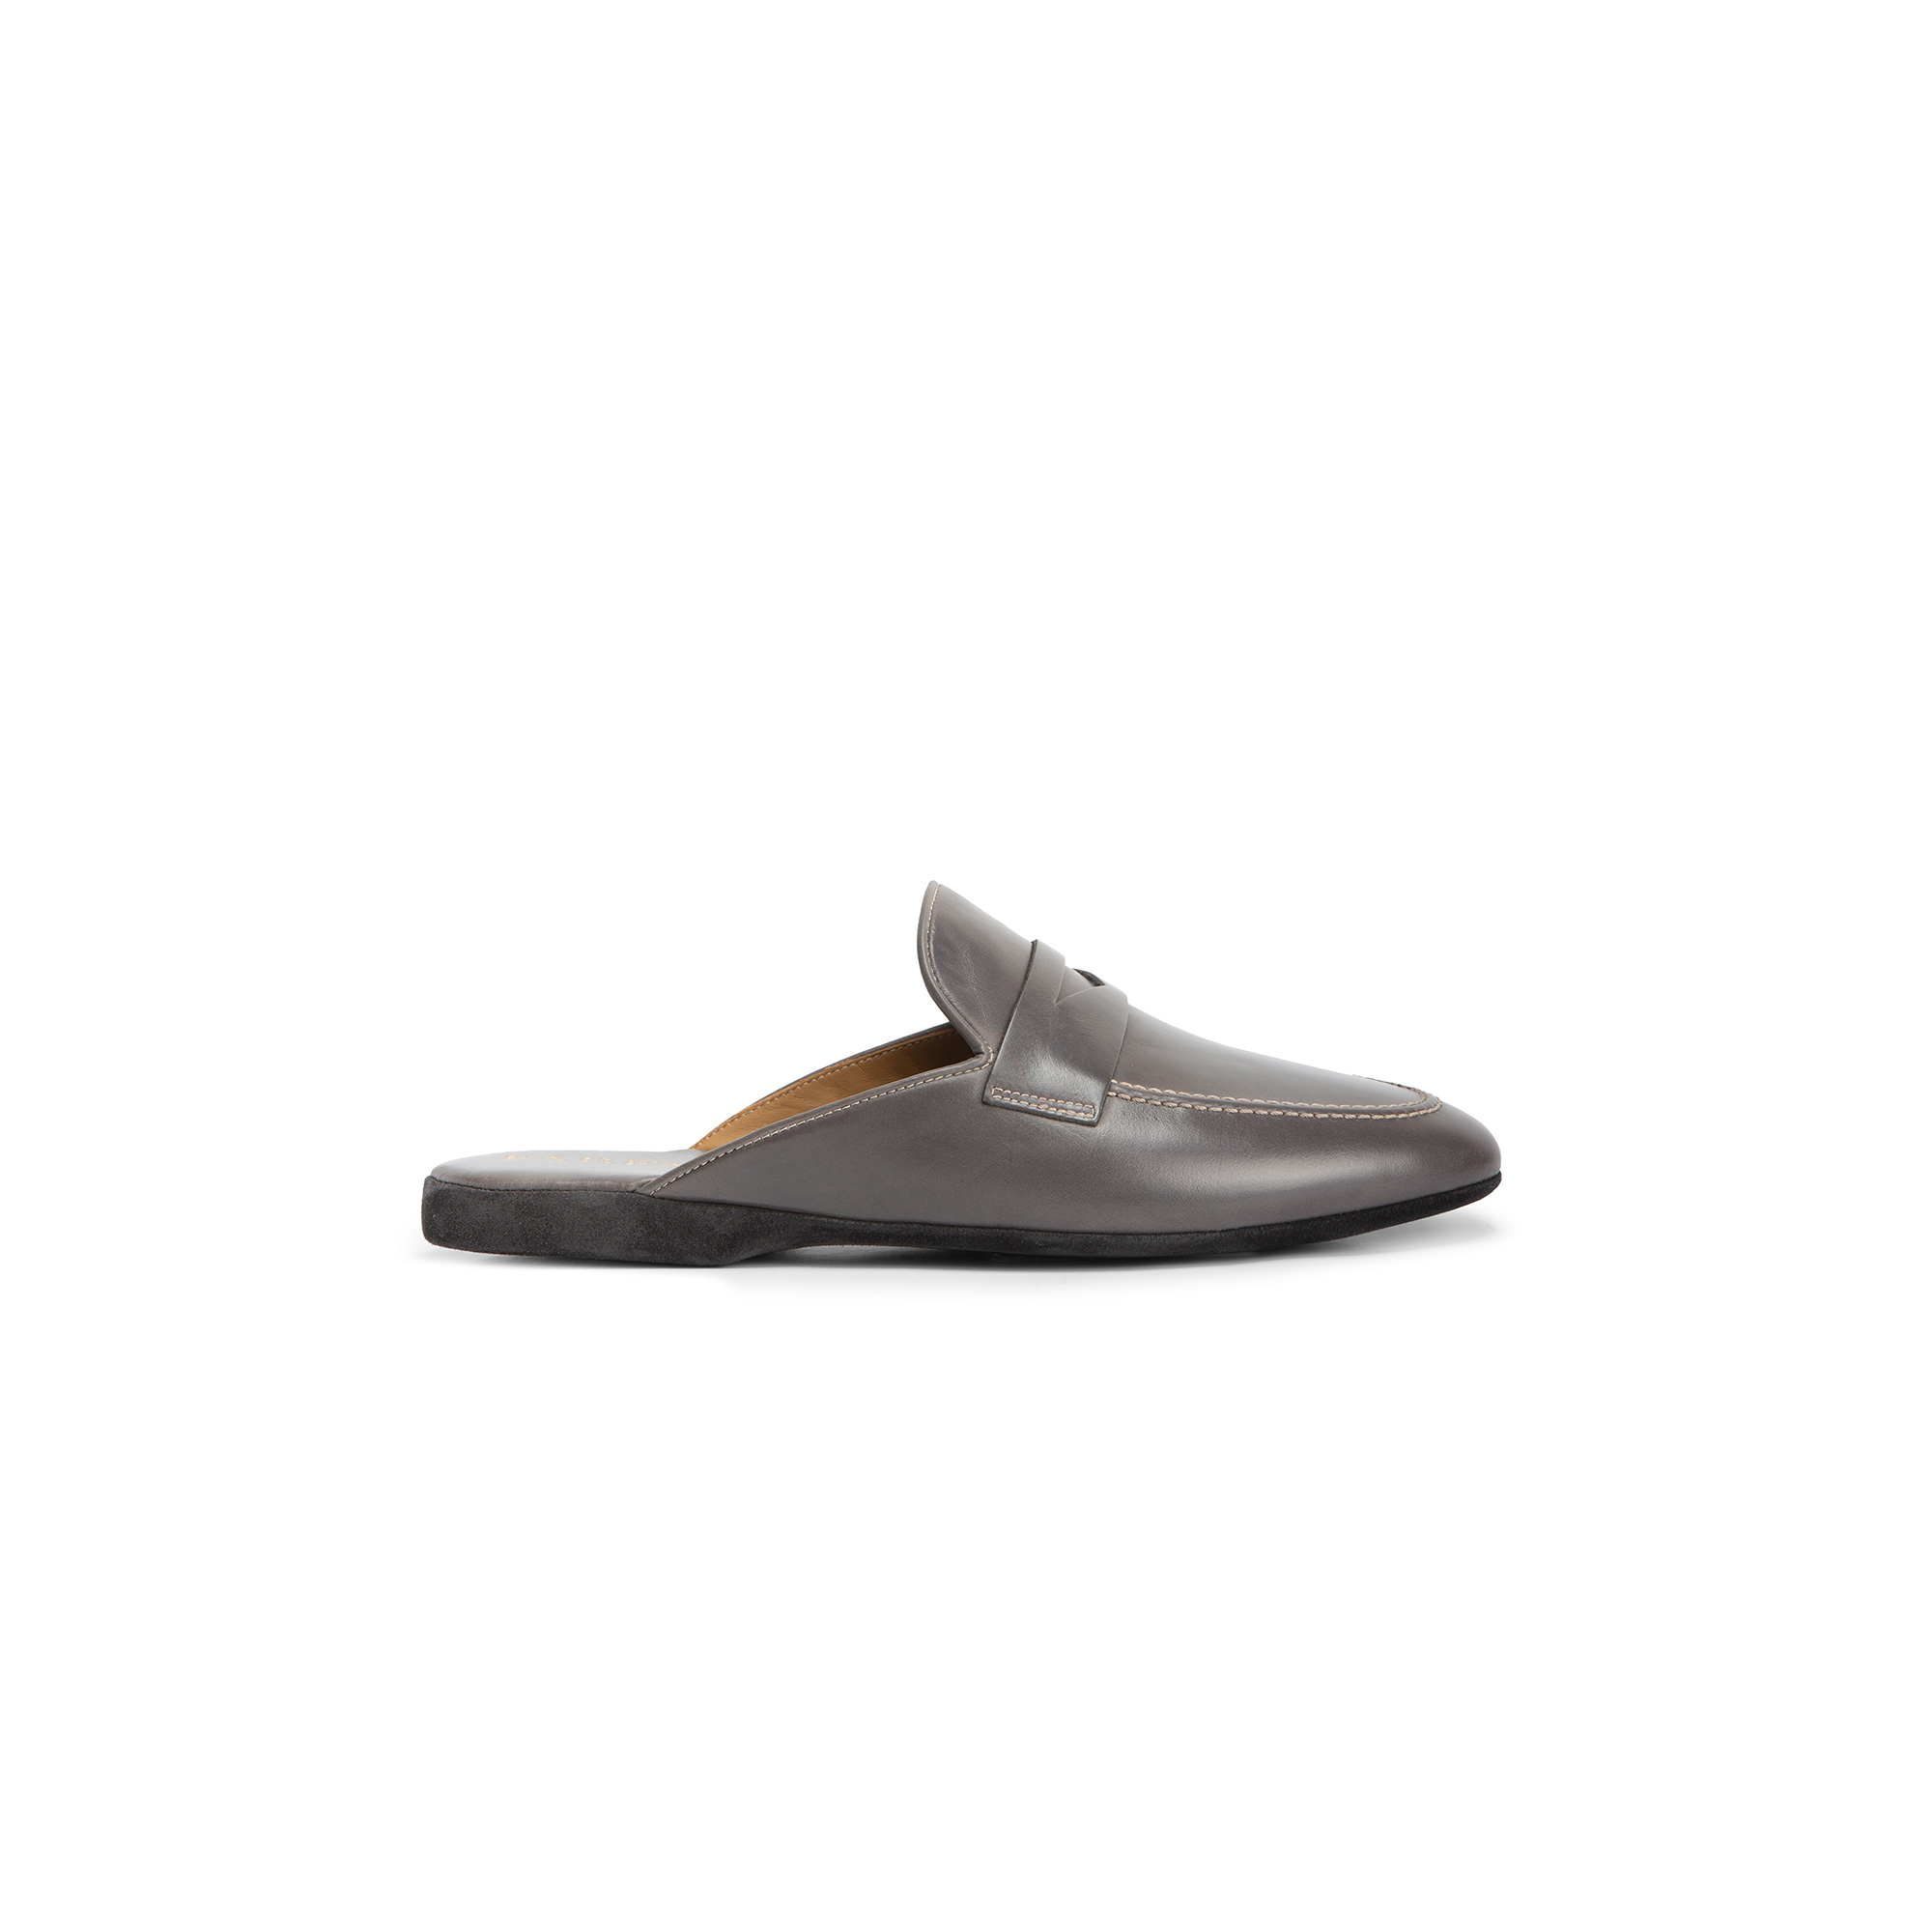 Pantofola aperta interno vitello grigio - Farfalla italian slippers